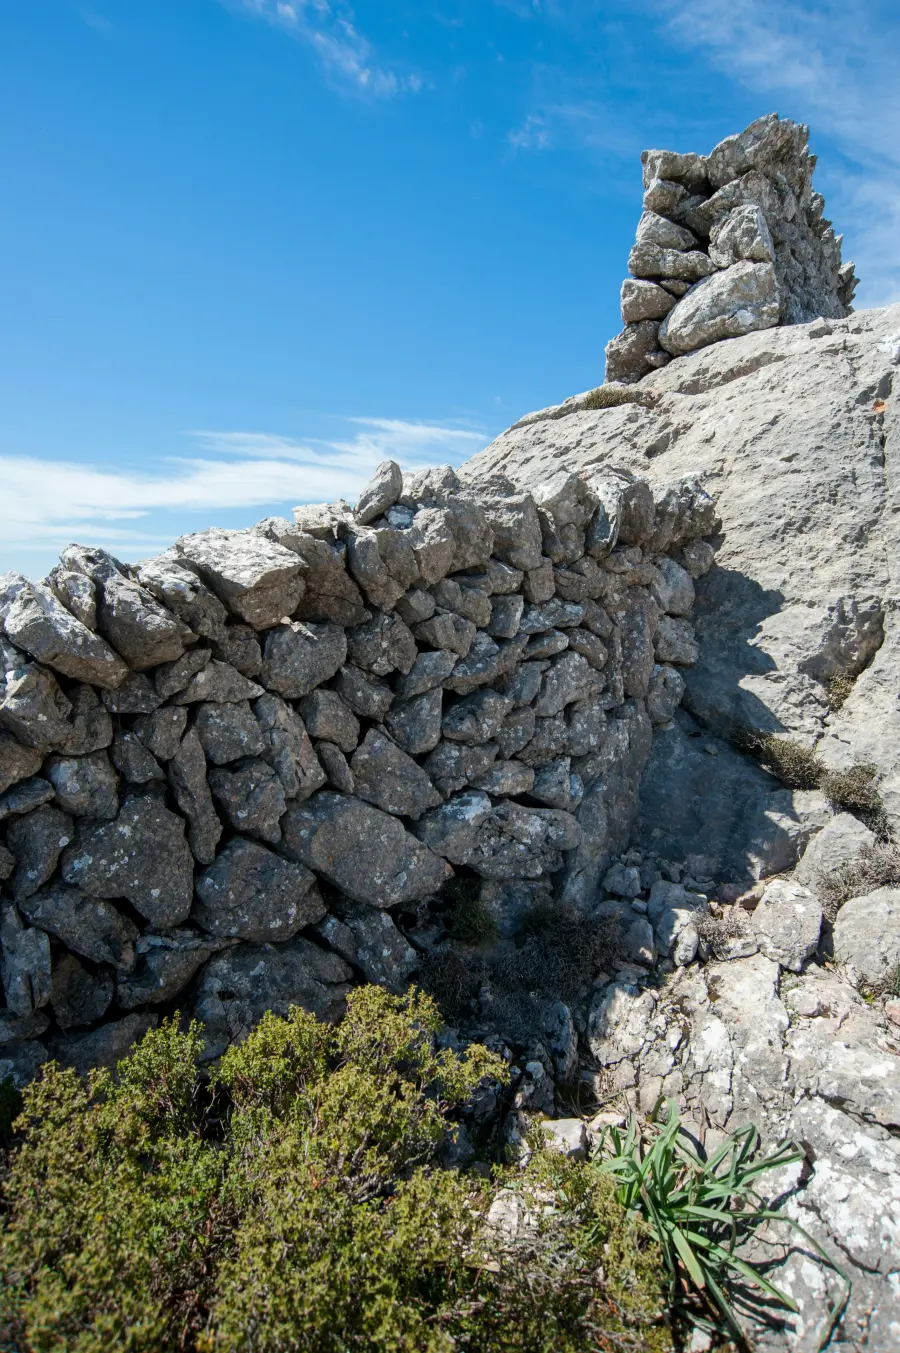 Tradicionalni suhozid i izbočena stijena pod vedrim plavim nebom, prikaz surovog prirodnog krajolika otoka Murtera.